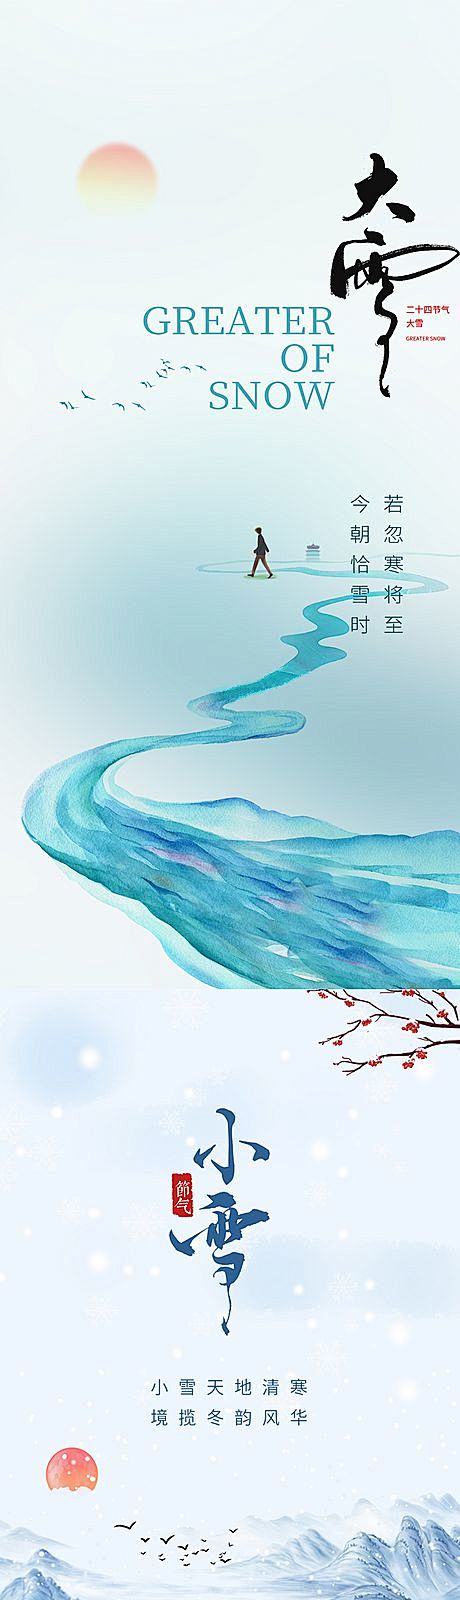 【仙图网】海报 二十四节气 小雪 大雪 ...